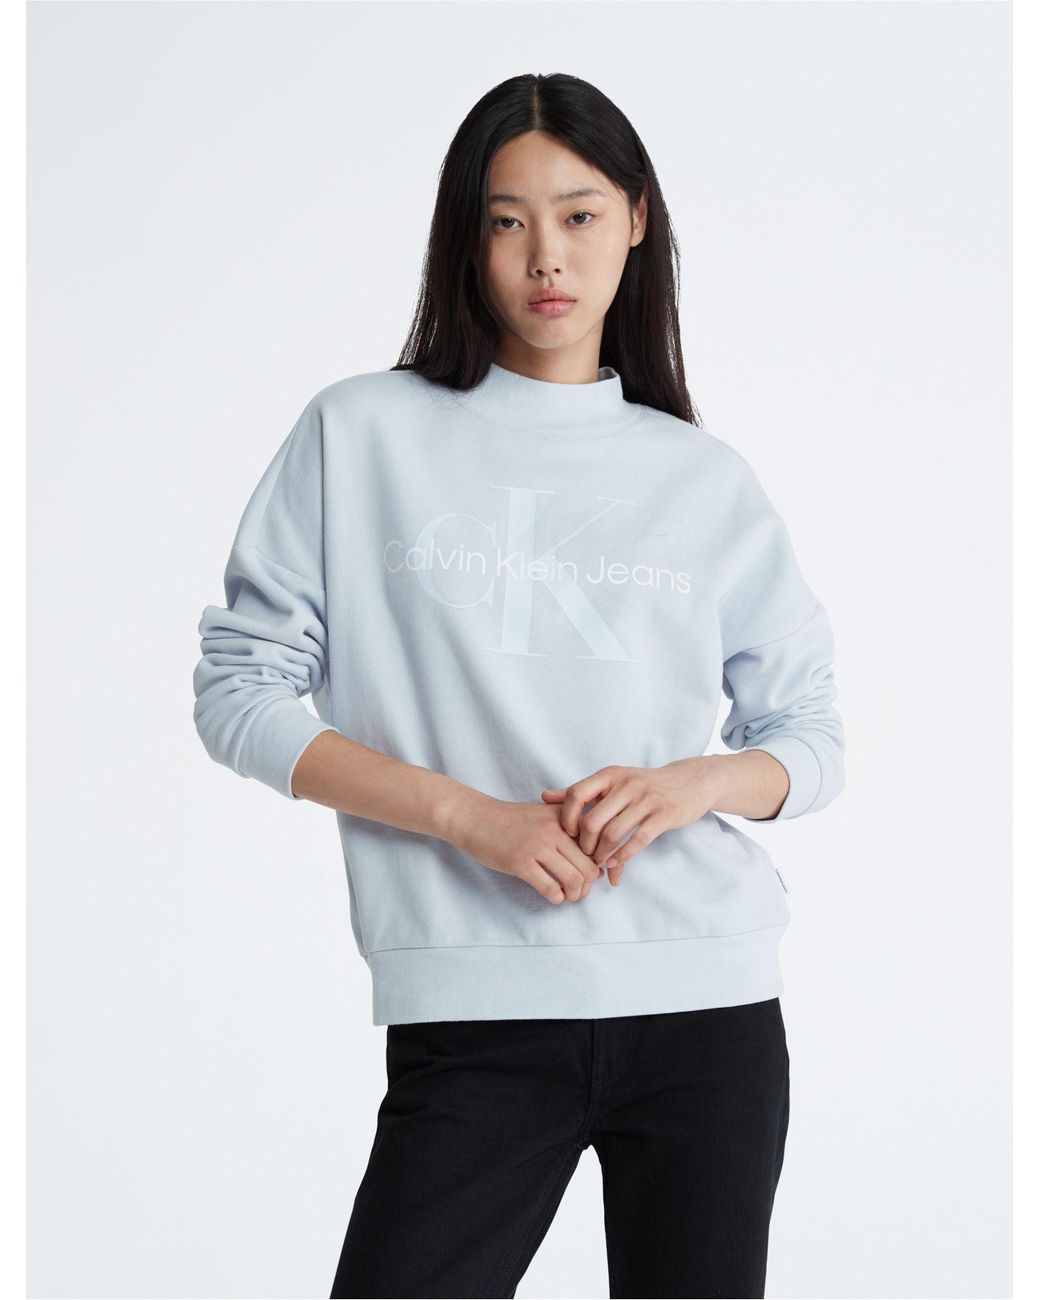 Calvin Klein Monogram Logo Mock Neck Sweatshirt in White | Lyst